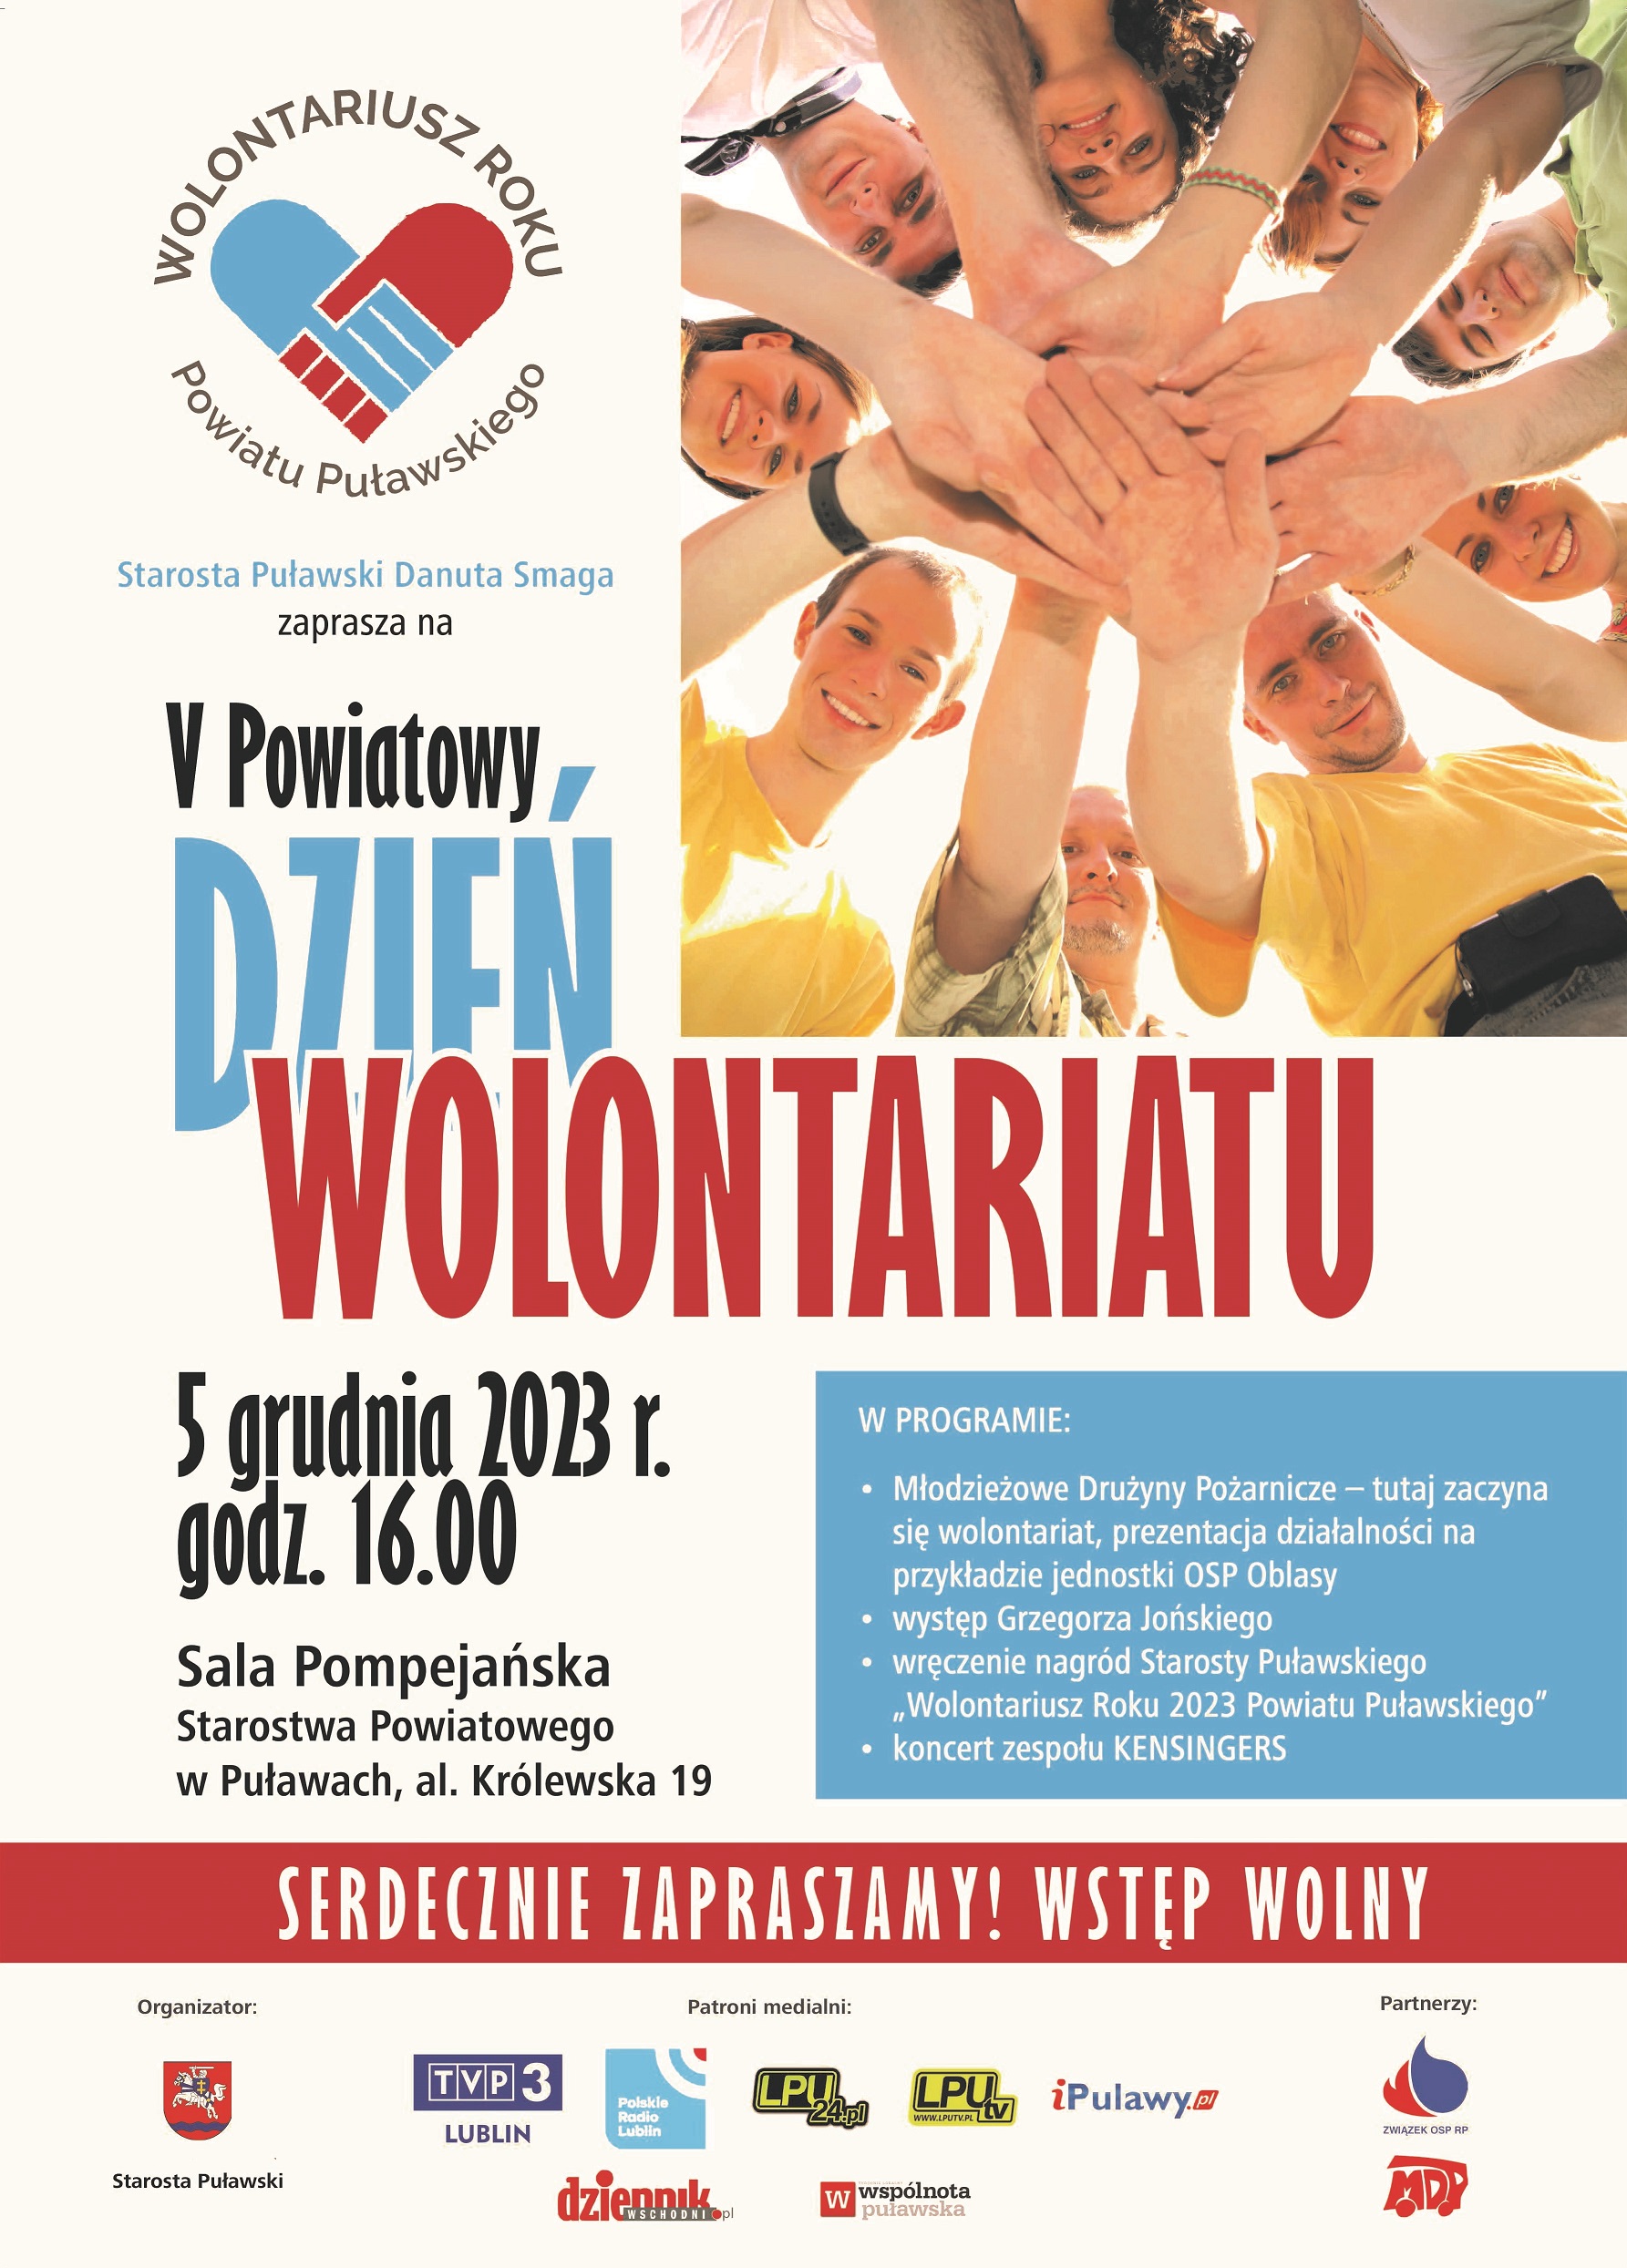 Zdjęcie prezentuję plakat zapraszający na V Powiatowy Dzień Wolontariatu, który odbędzie się się 5 grudnia 2023 r. o godz. 16.00 w Sali Pompejańskiej w budynku Starostwa Powiatowego w Puławach. 